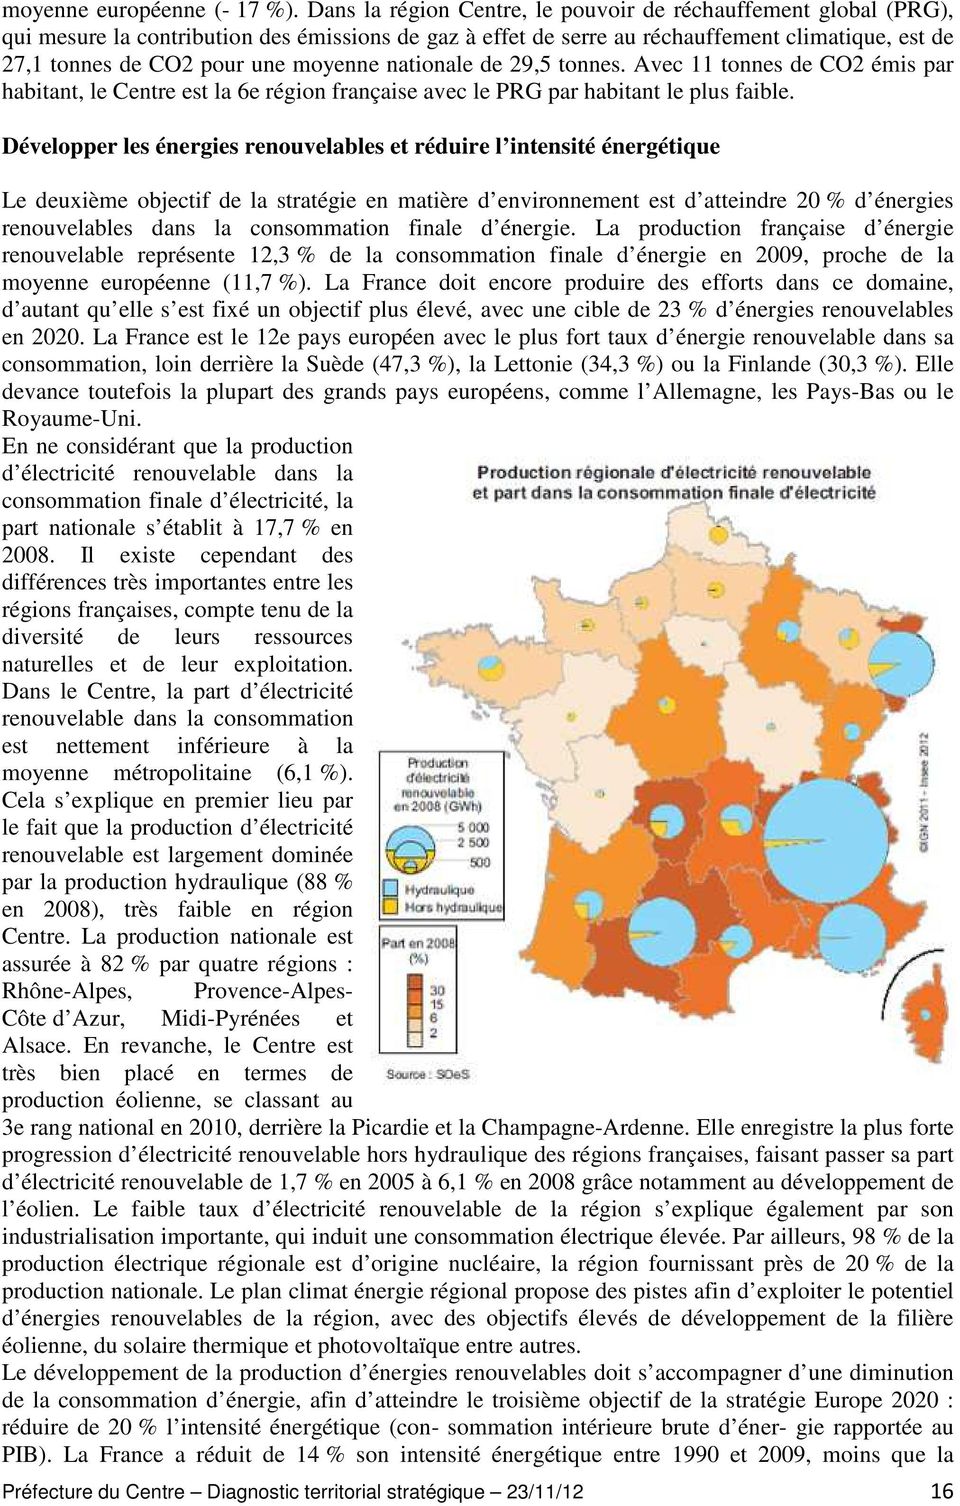 moyenne nationale de 29,5 tonnes. Avec 11 tonnes de CO2 émis par habitant, le Centre est la 6e région française avec le PRG par habitant le plus faible.